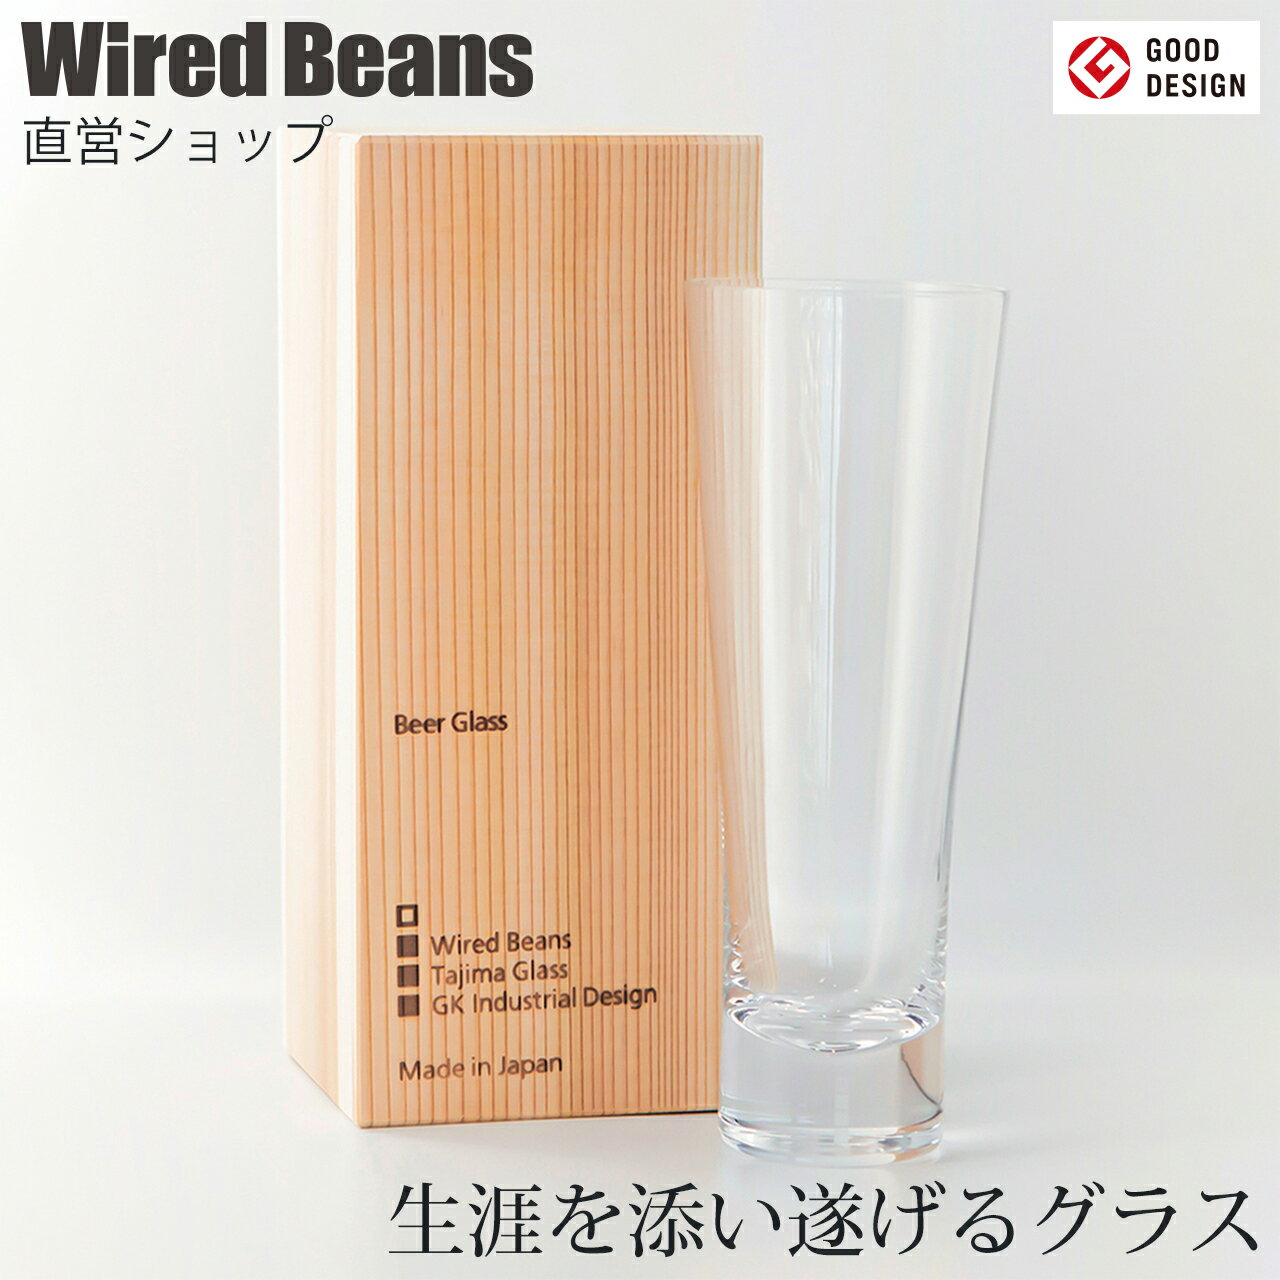 生涯を添い遂げるグラス ビア ビールグラス 430ml(Wired Beans)